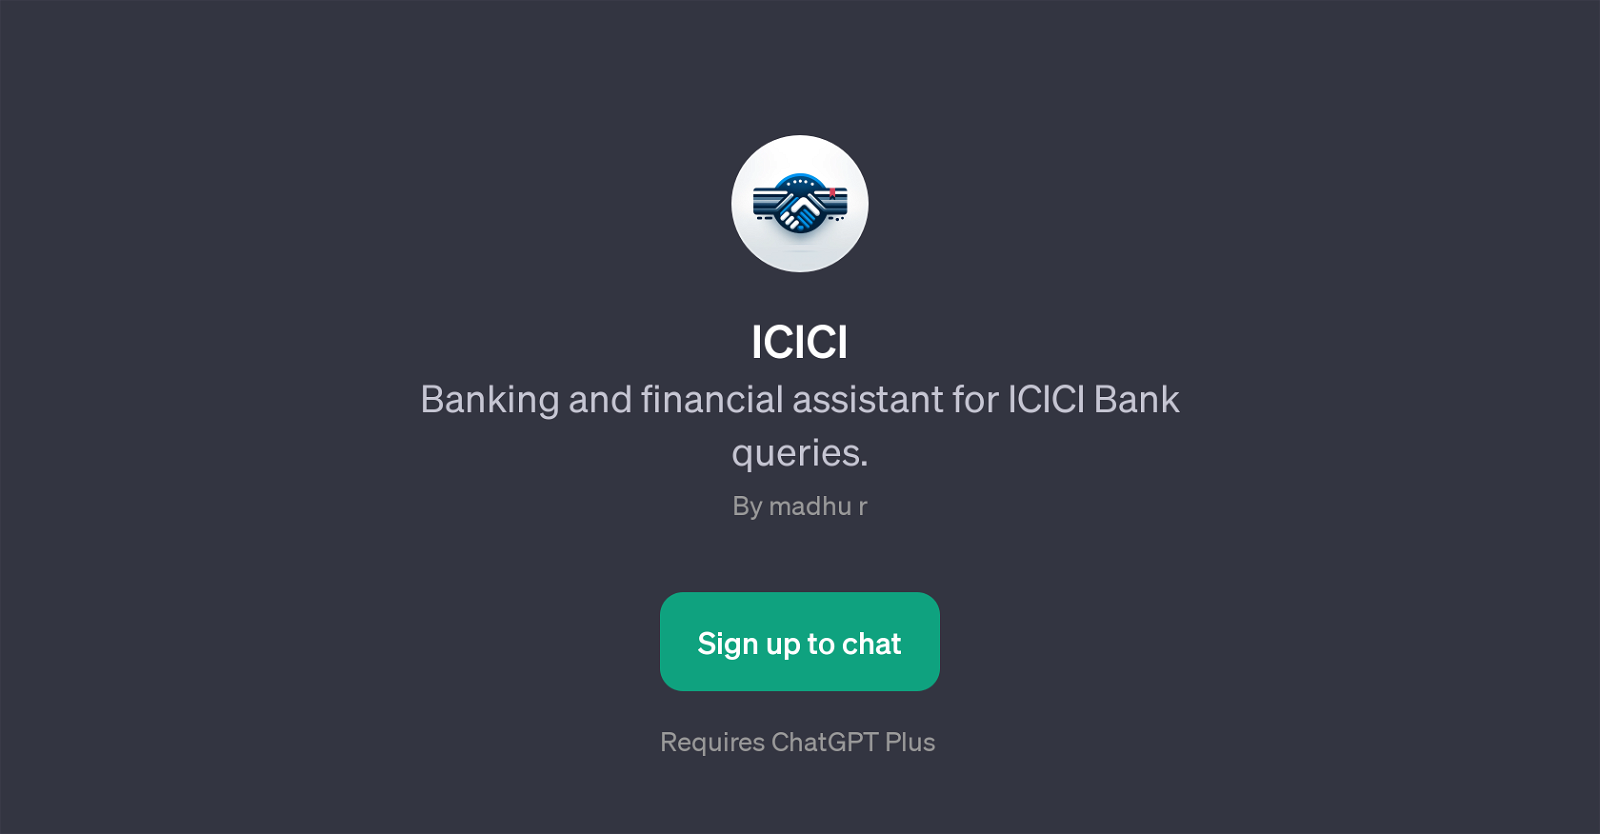 ICICI website